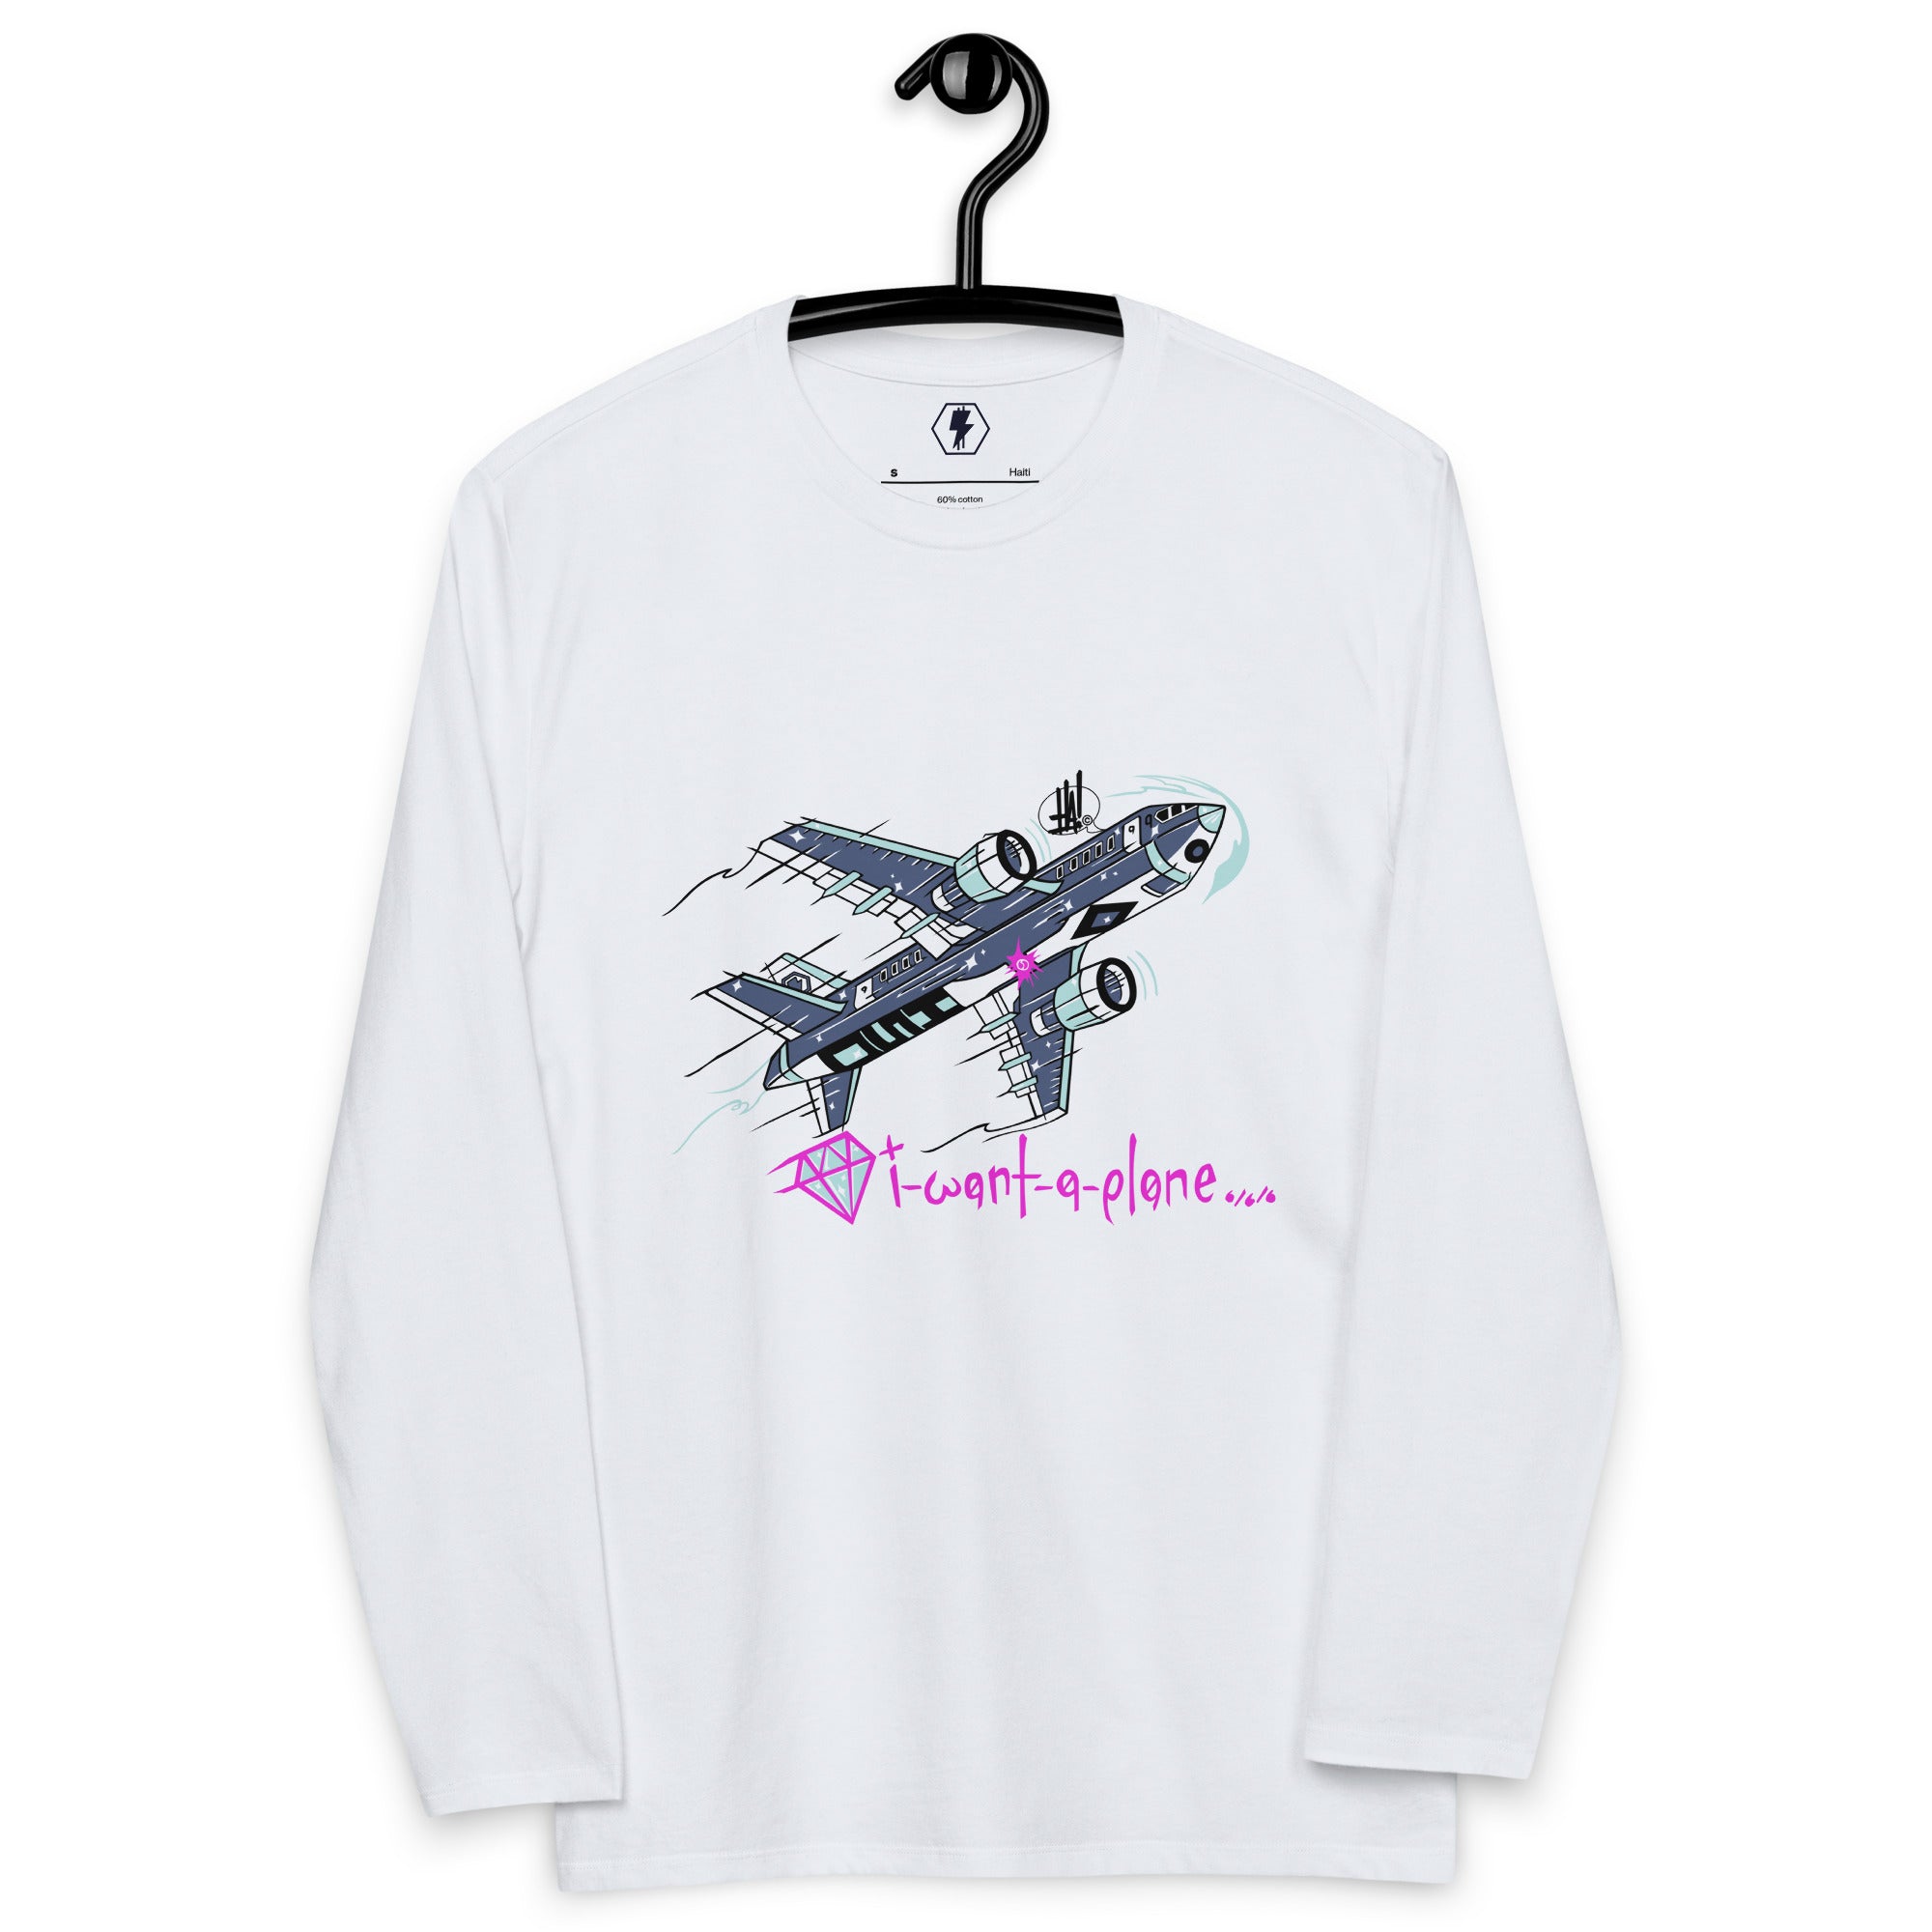 'I Want A Plane' Unisex Fashion Long-Sleeve Shirt